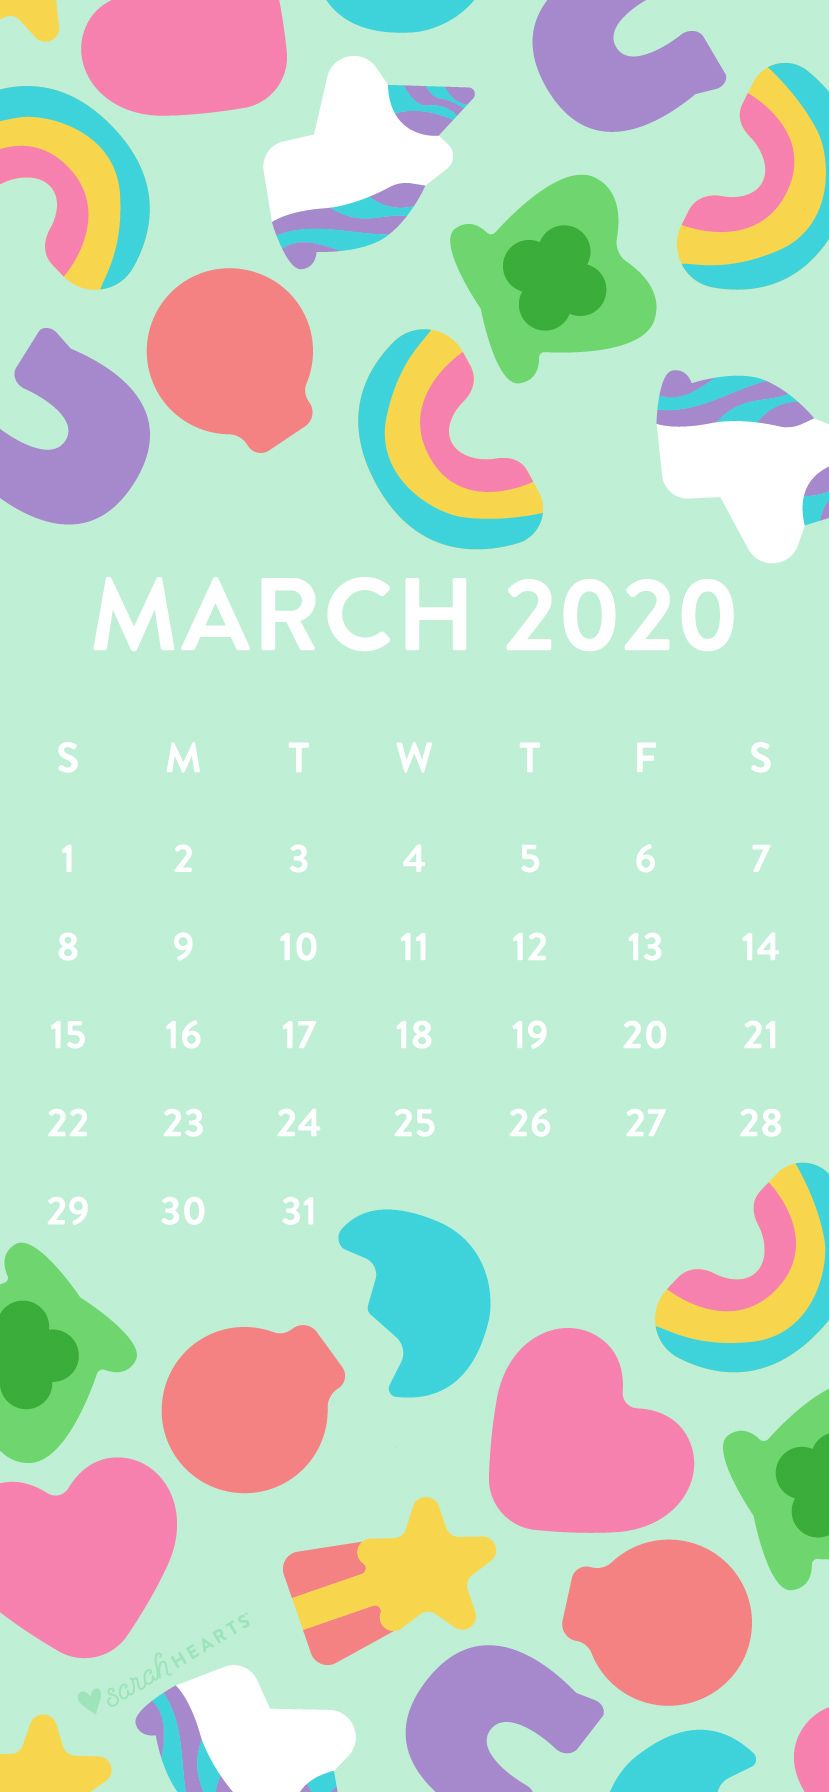 March 2020 Lucky Charms Calendar Wallpaper